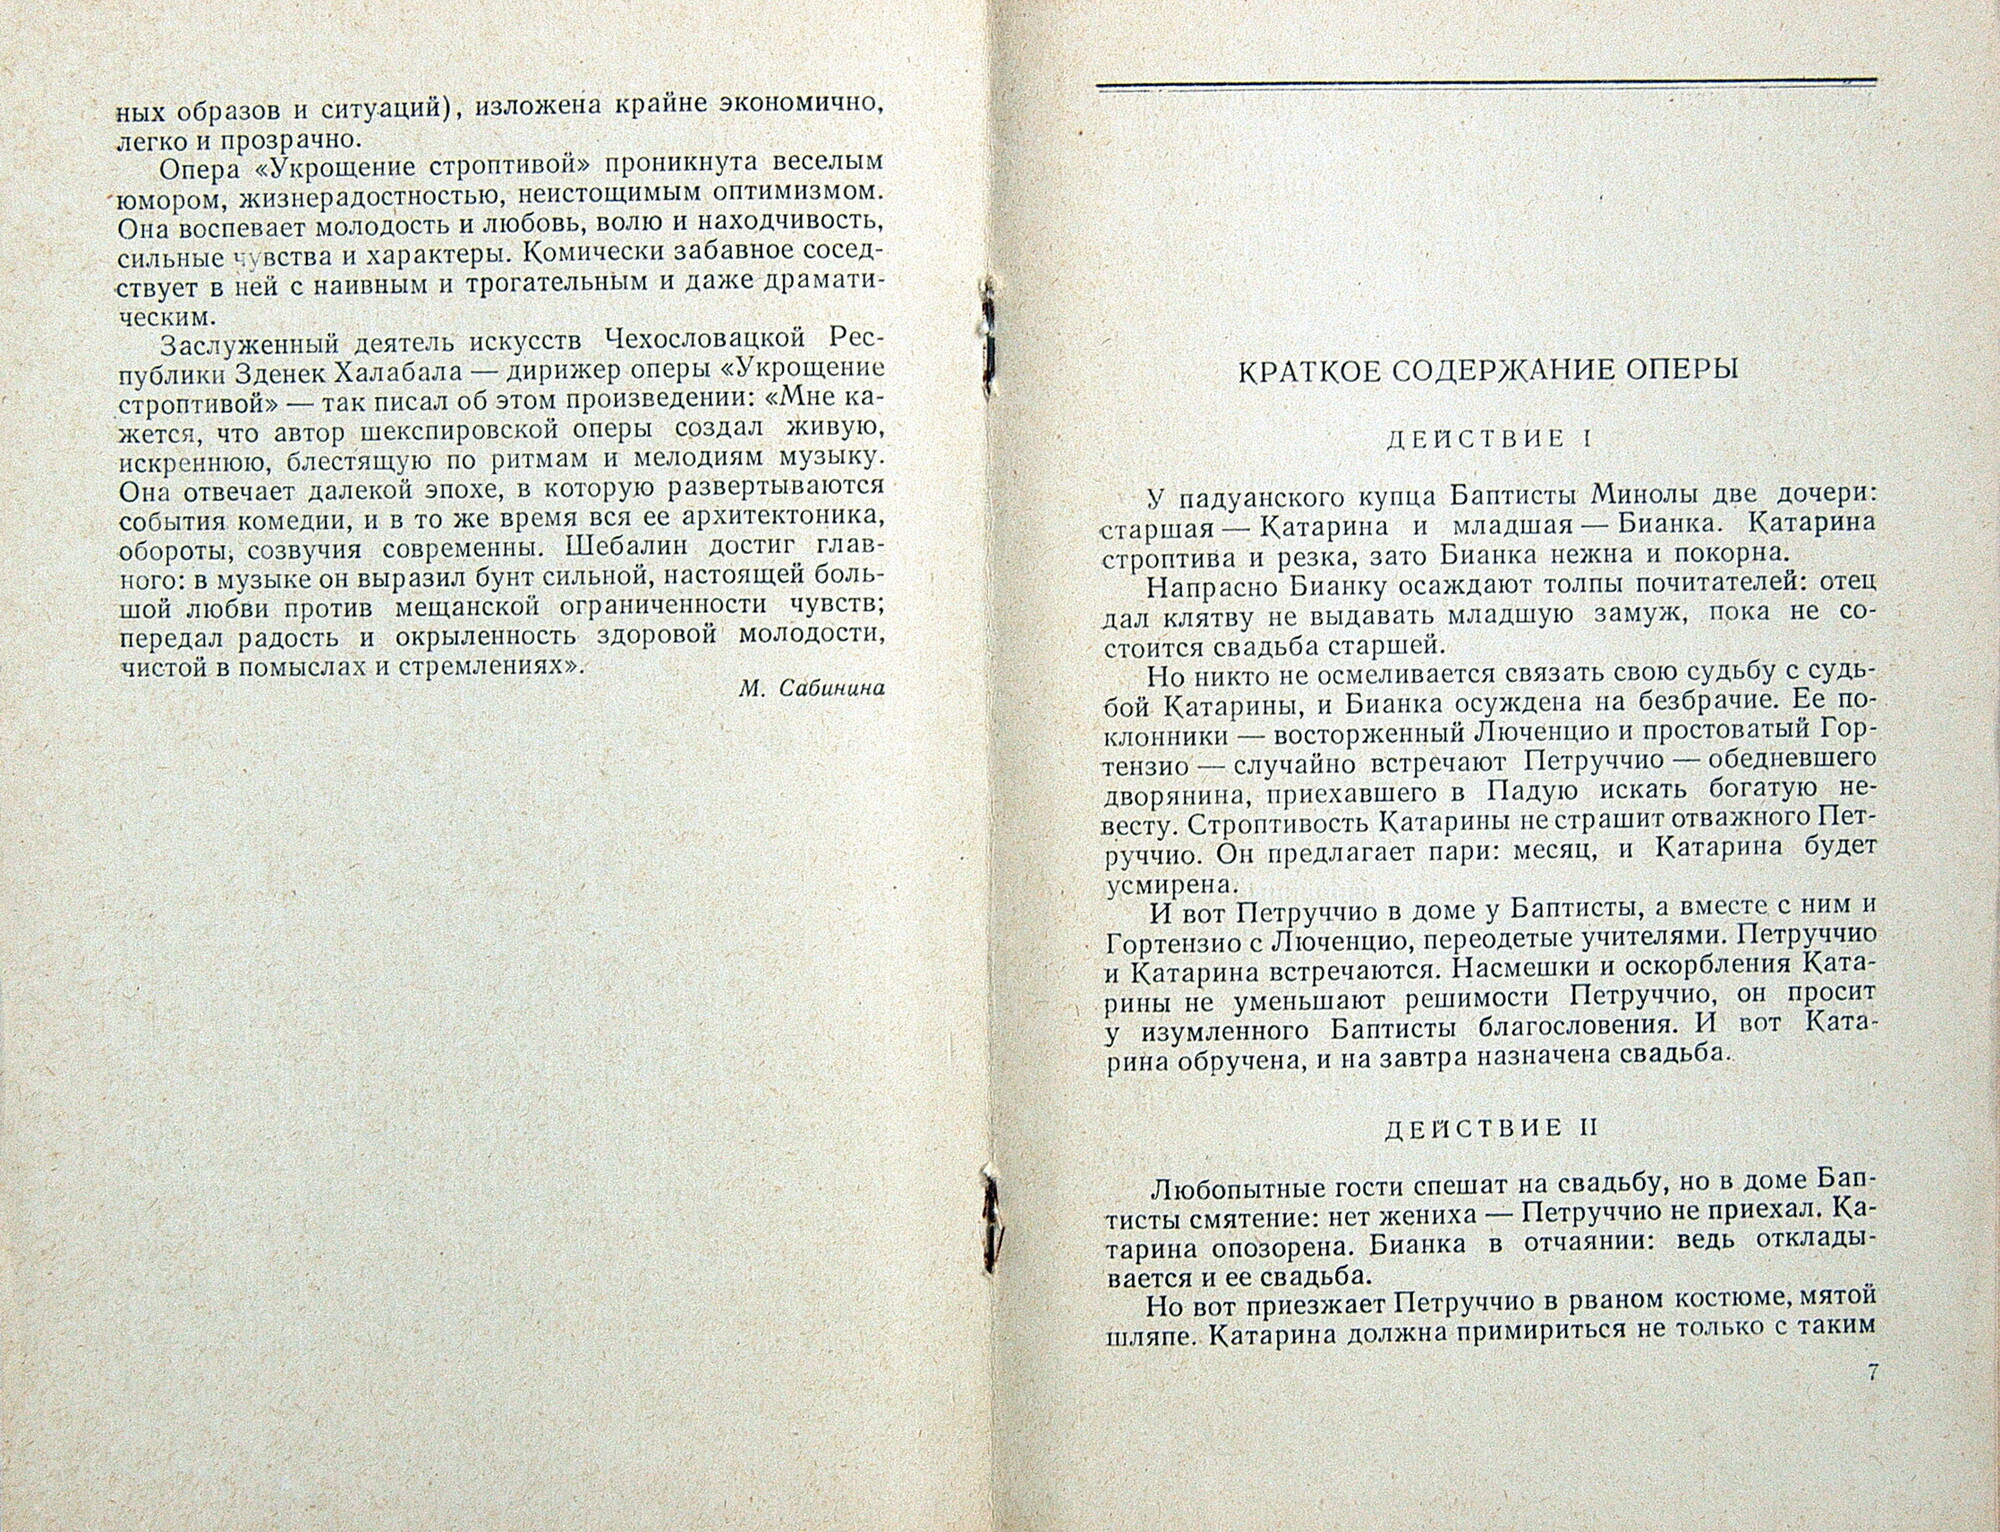 В. ШЕБАЛИН (1902–1963) «Укрощение строптивой», опера (З. Халабала)